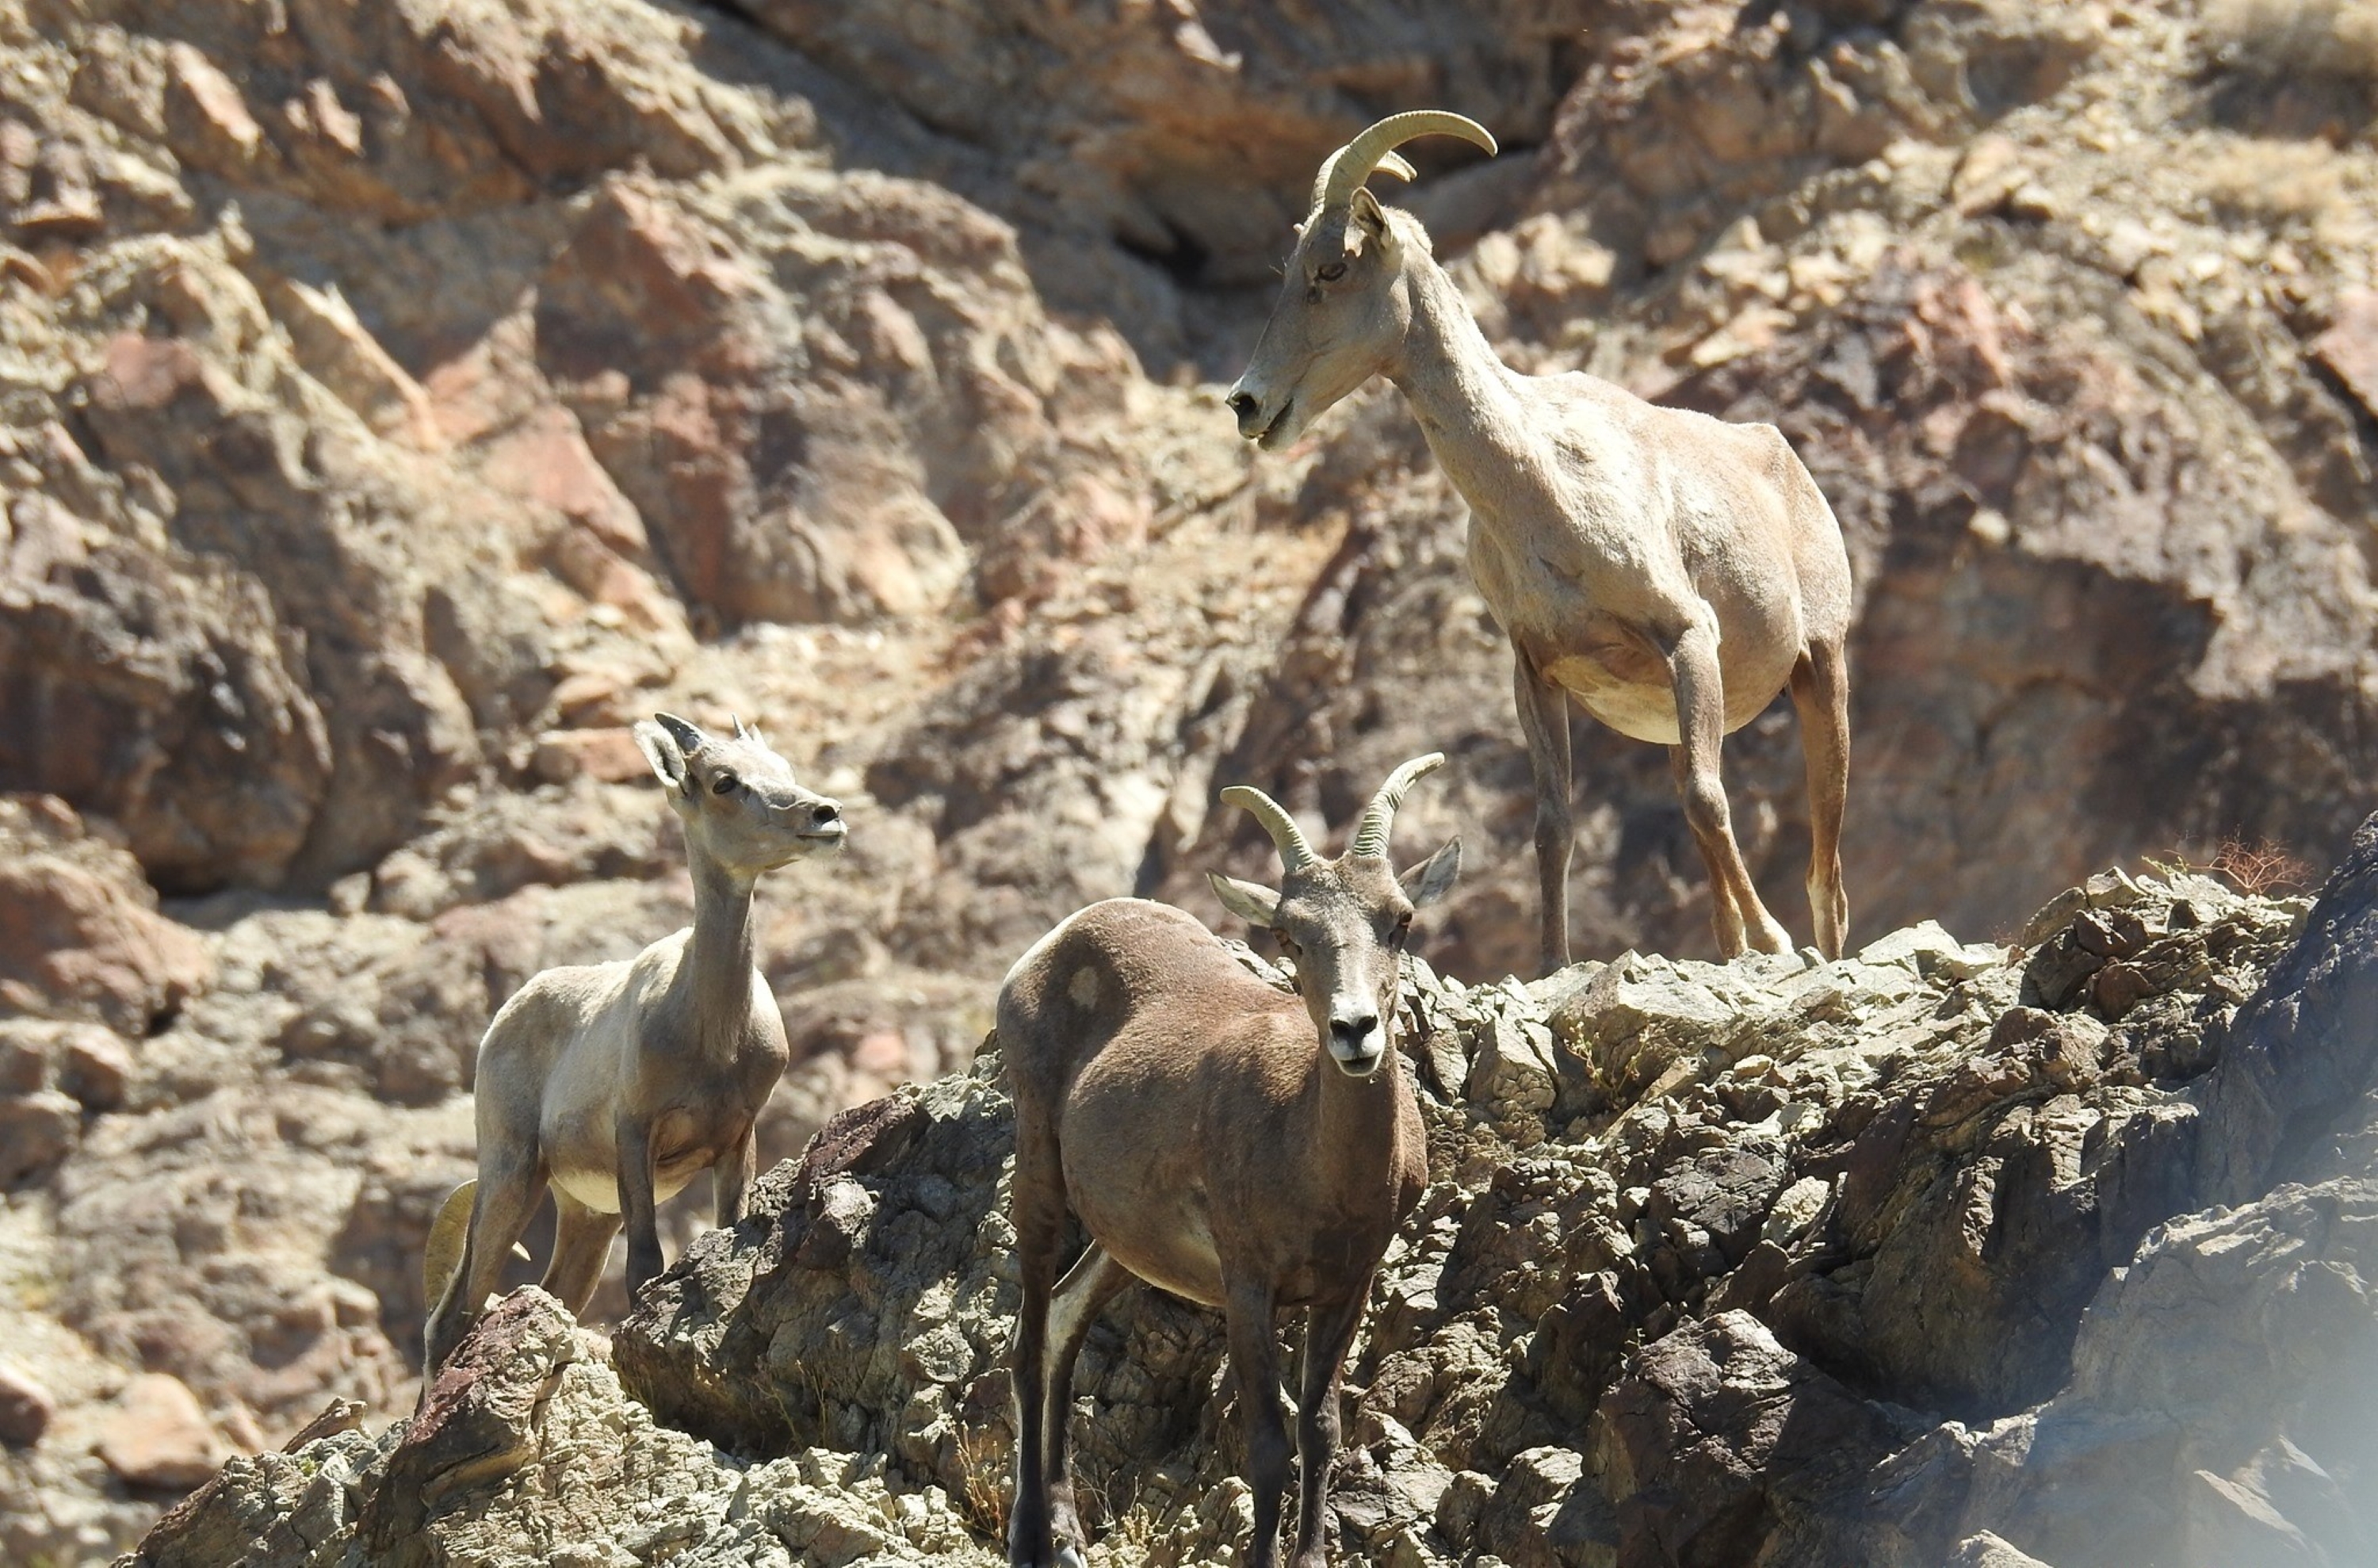 Desert bighorn sheep standing on rocky mountainside